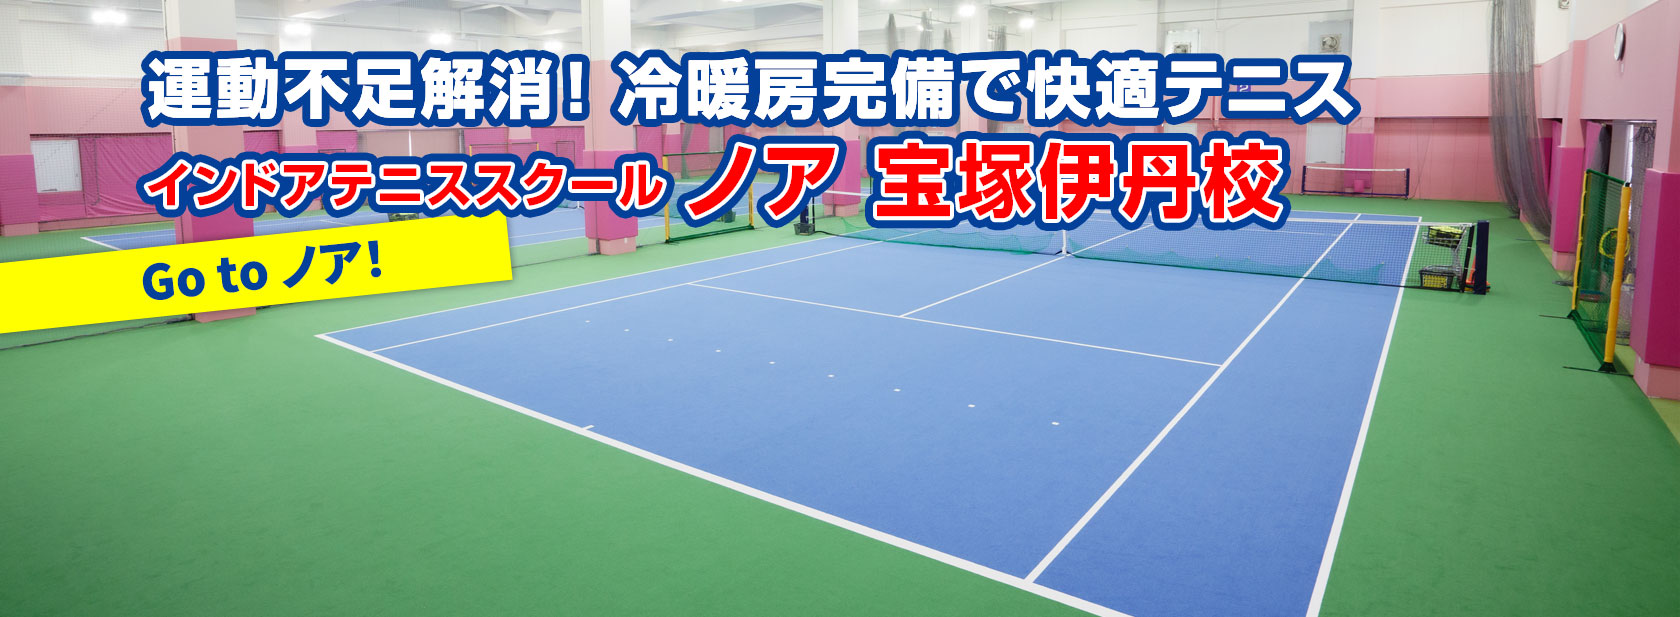 テニススクール ノア 宝塚伊丹校 宝塚市